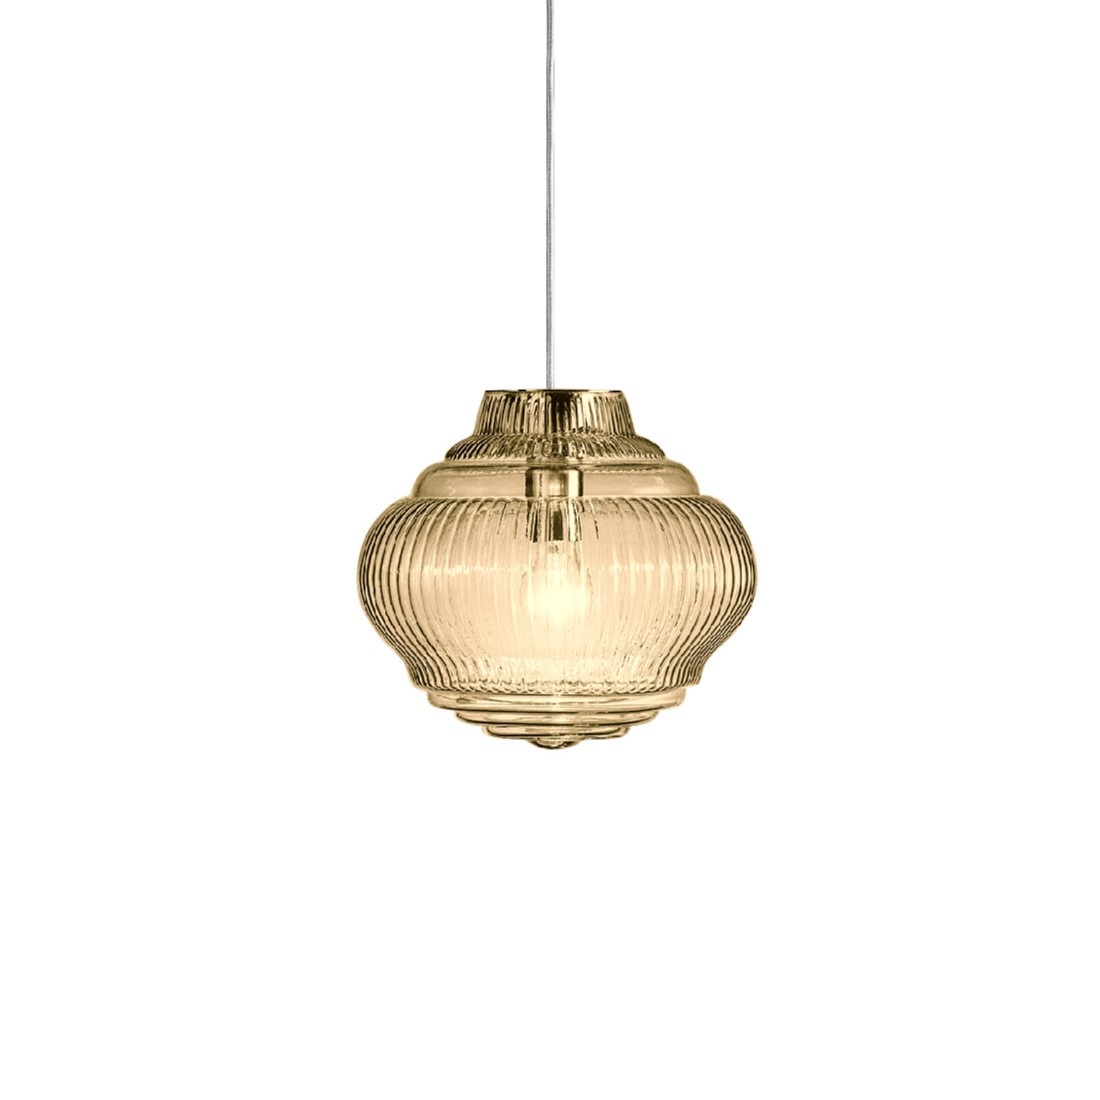 Gewoon ondergeschikt zakdoek Glazen hanglamp Bonnie van het Italiaanse merk Zafferano - Designlamp.nl